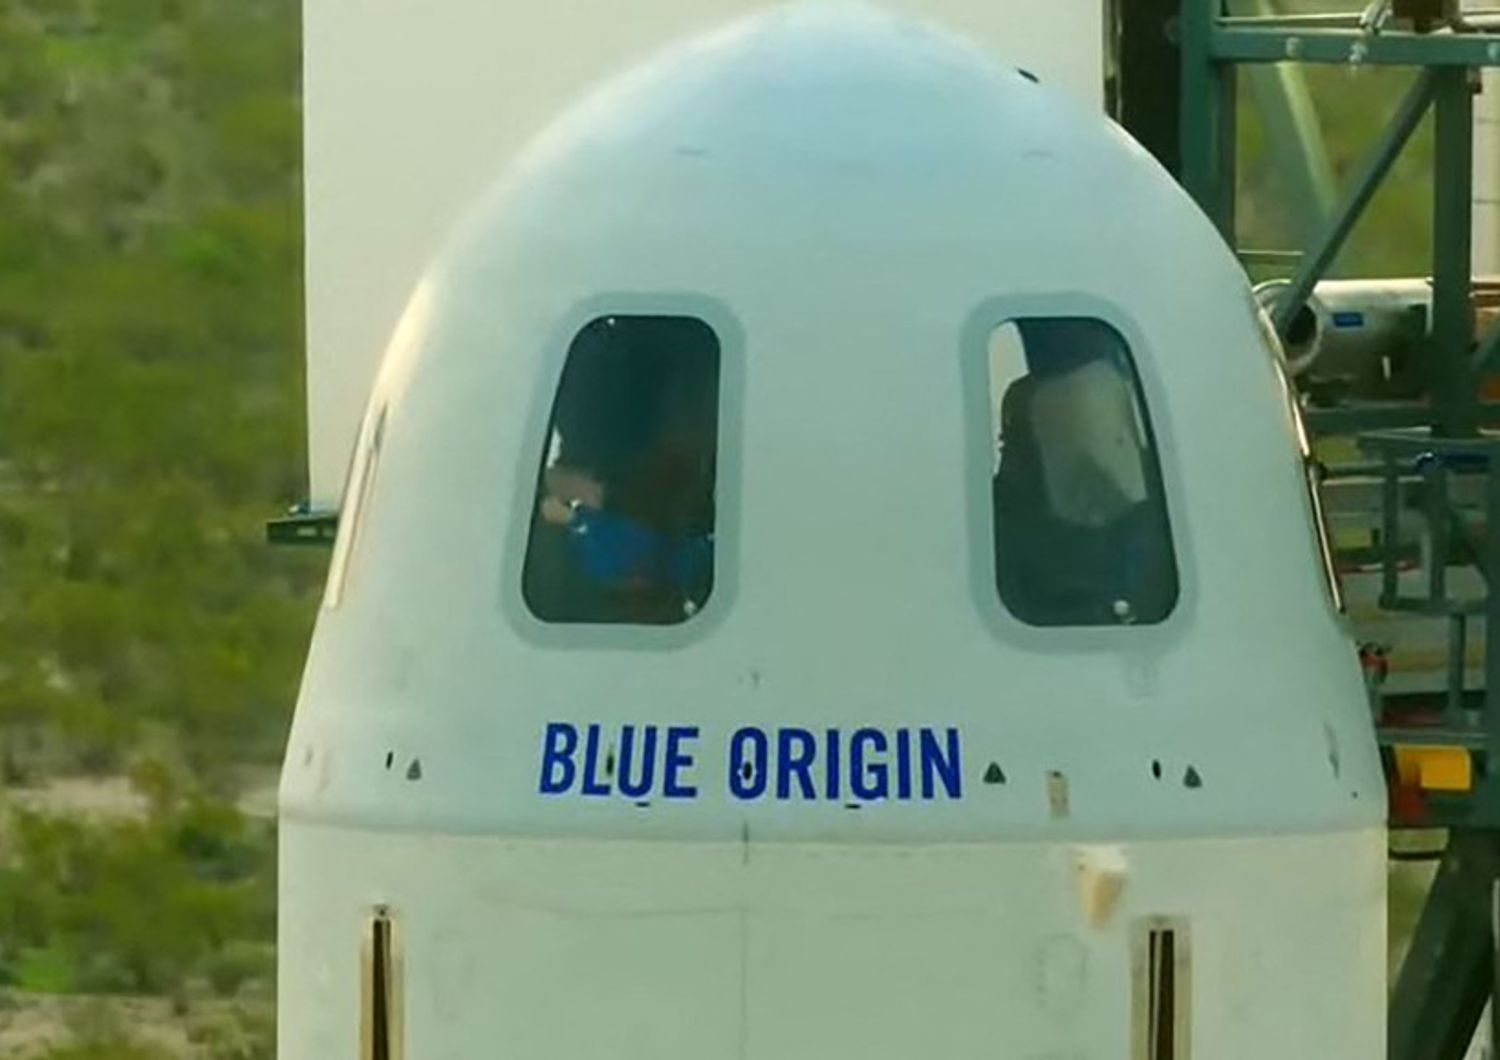 La capsula spaziale di Blue Origin, azienda astronautica di Jeff Bezos